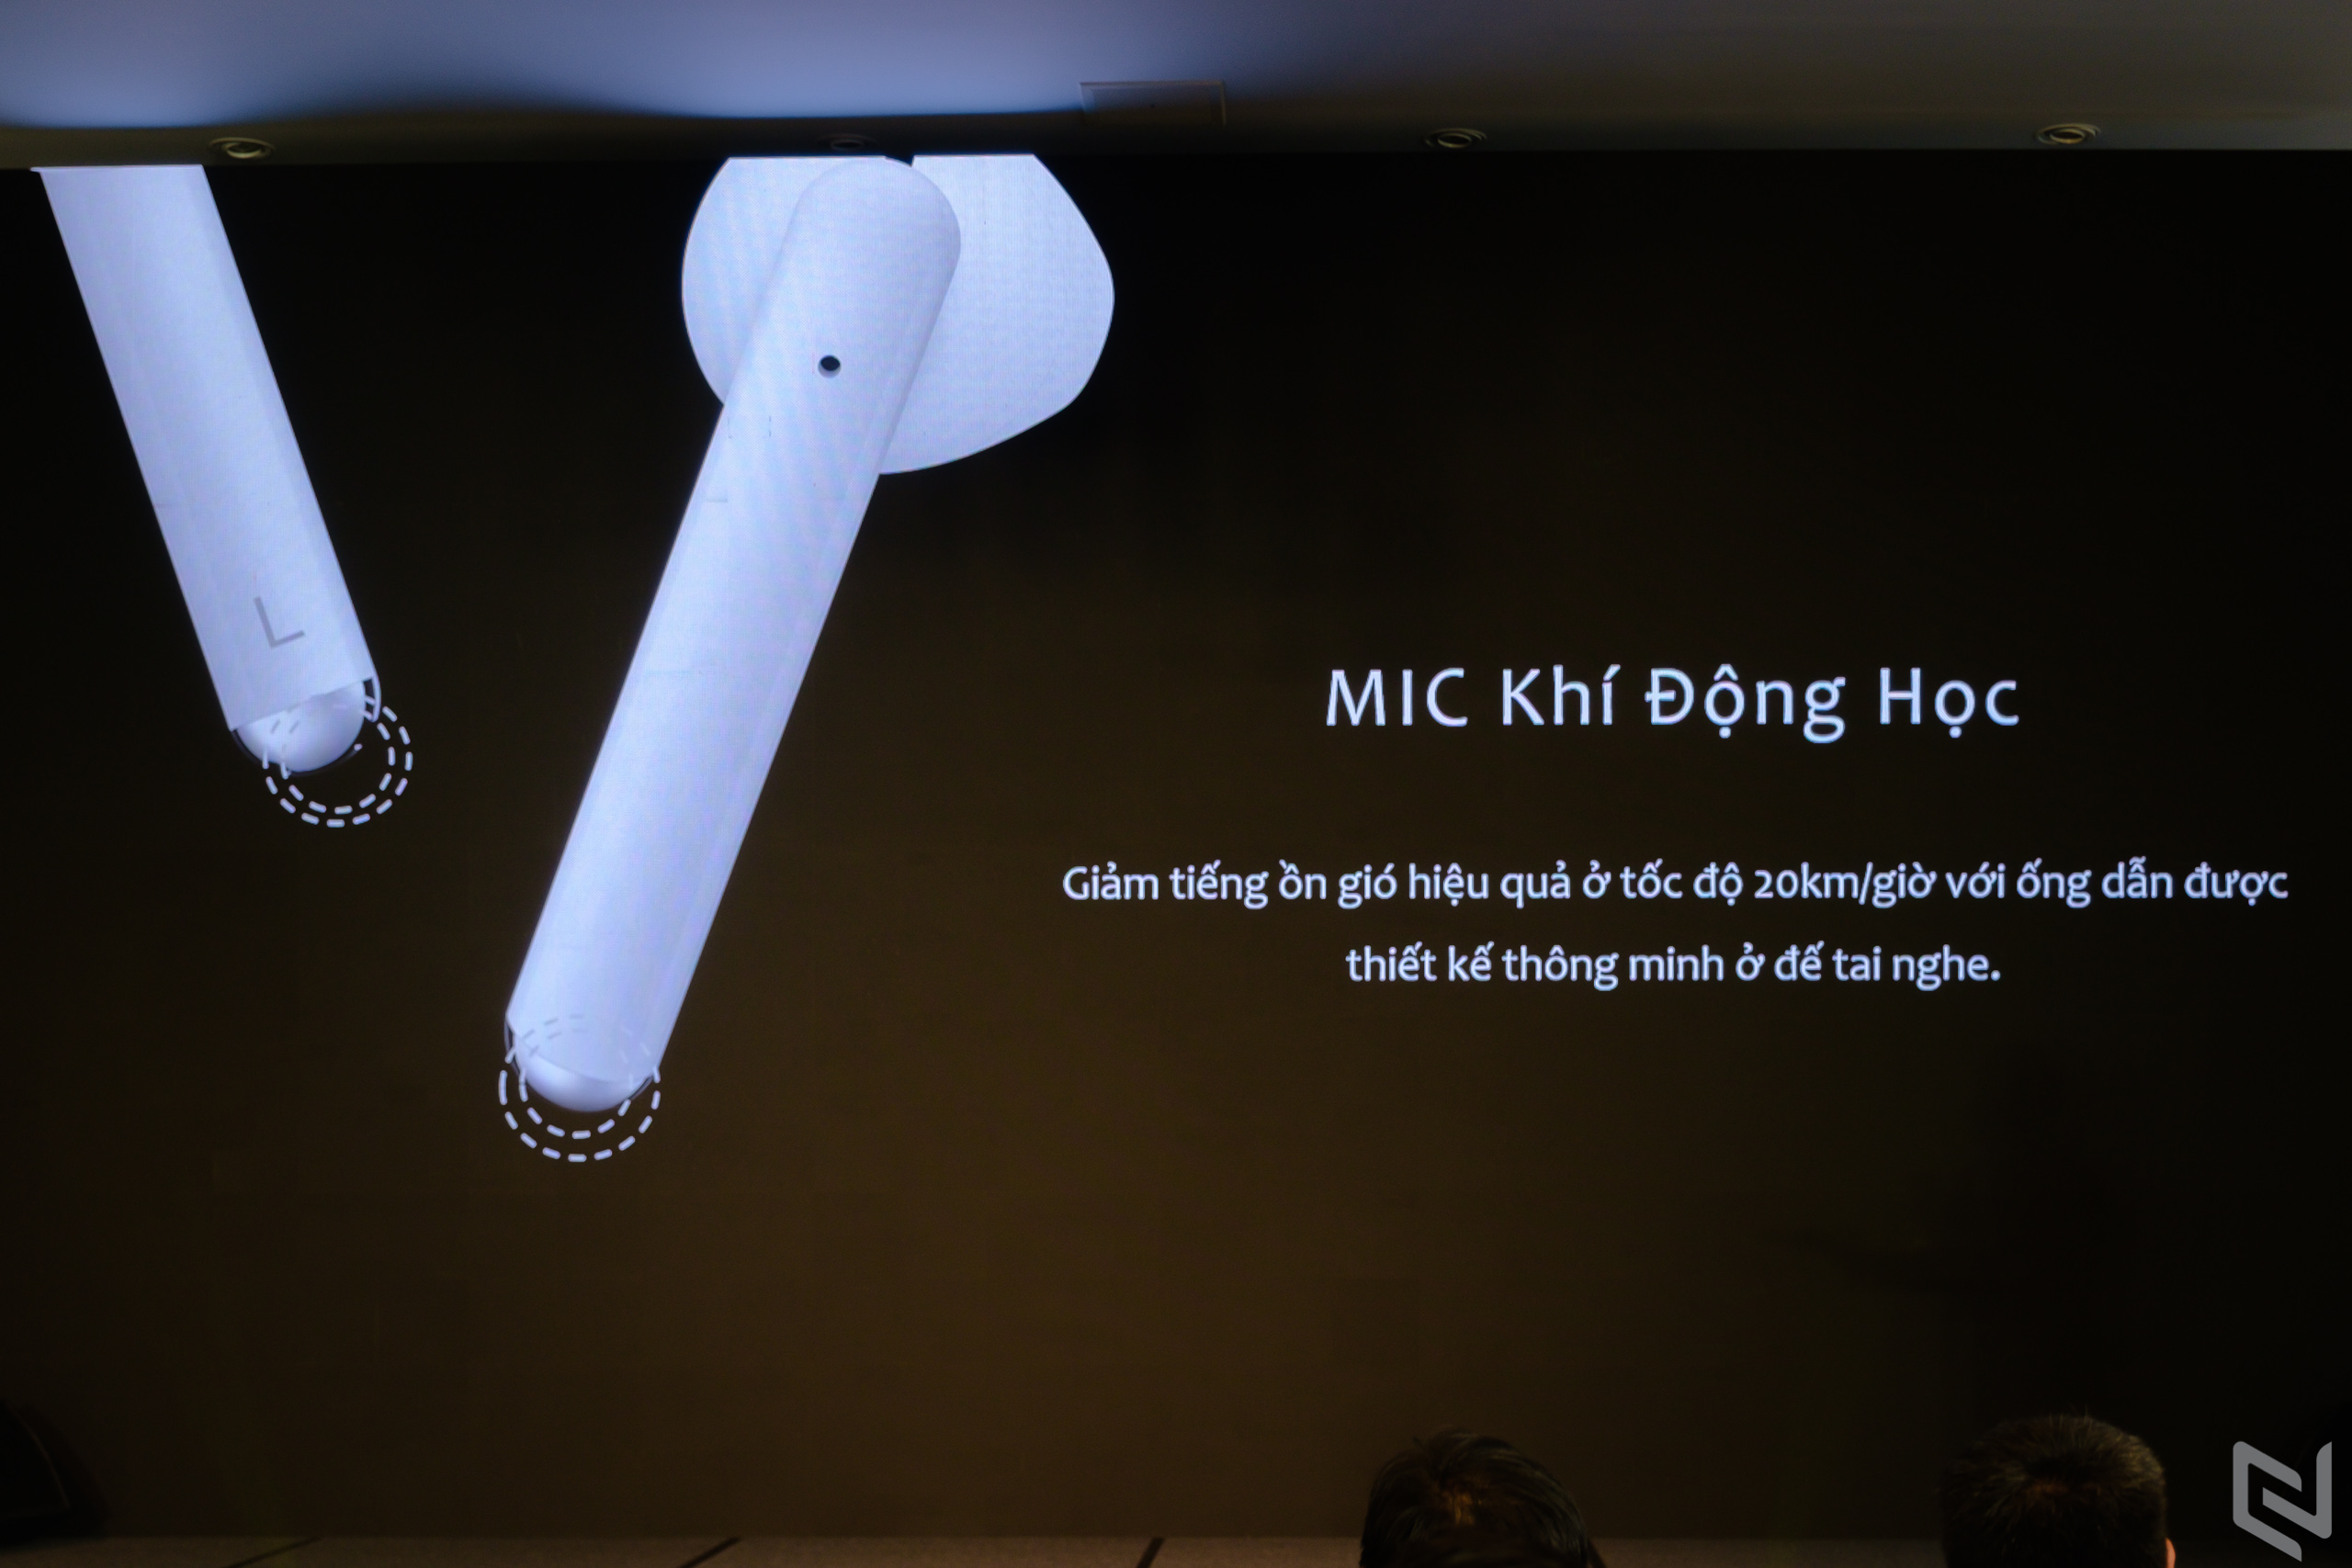 Tai nghe Huawei Freebuds 3, thiết kế earbuds nhưng có chống ồn chủ động, giá 4.3 triệu